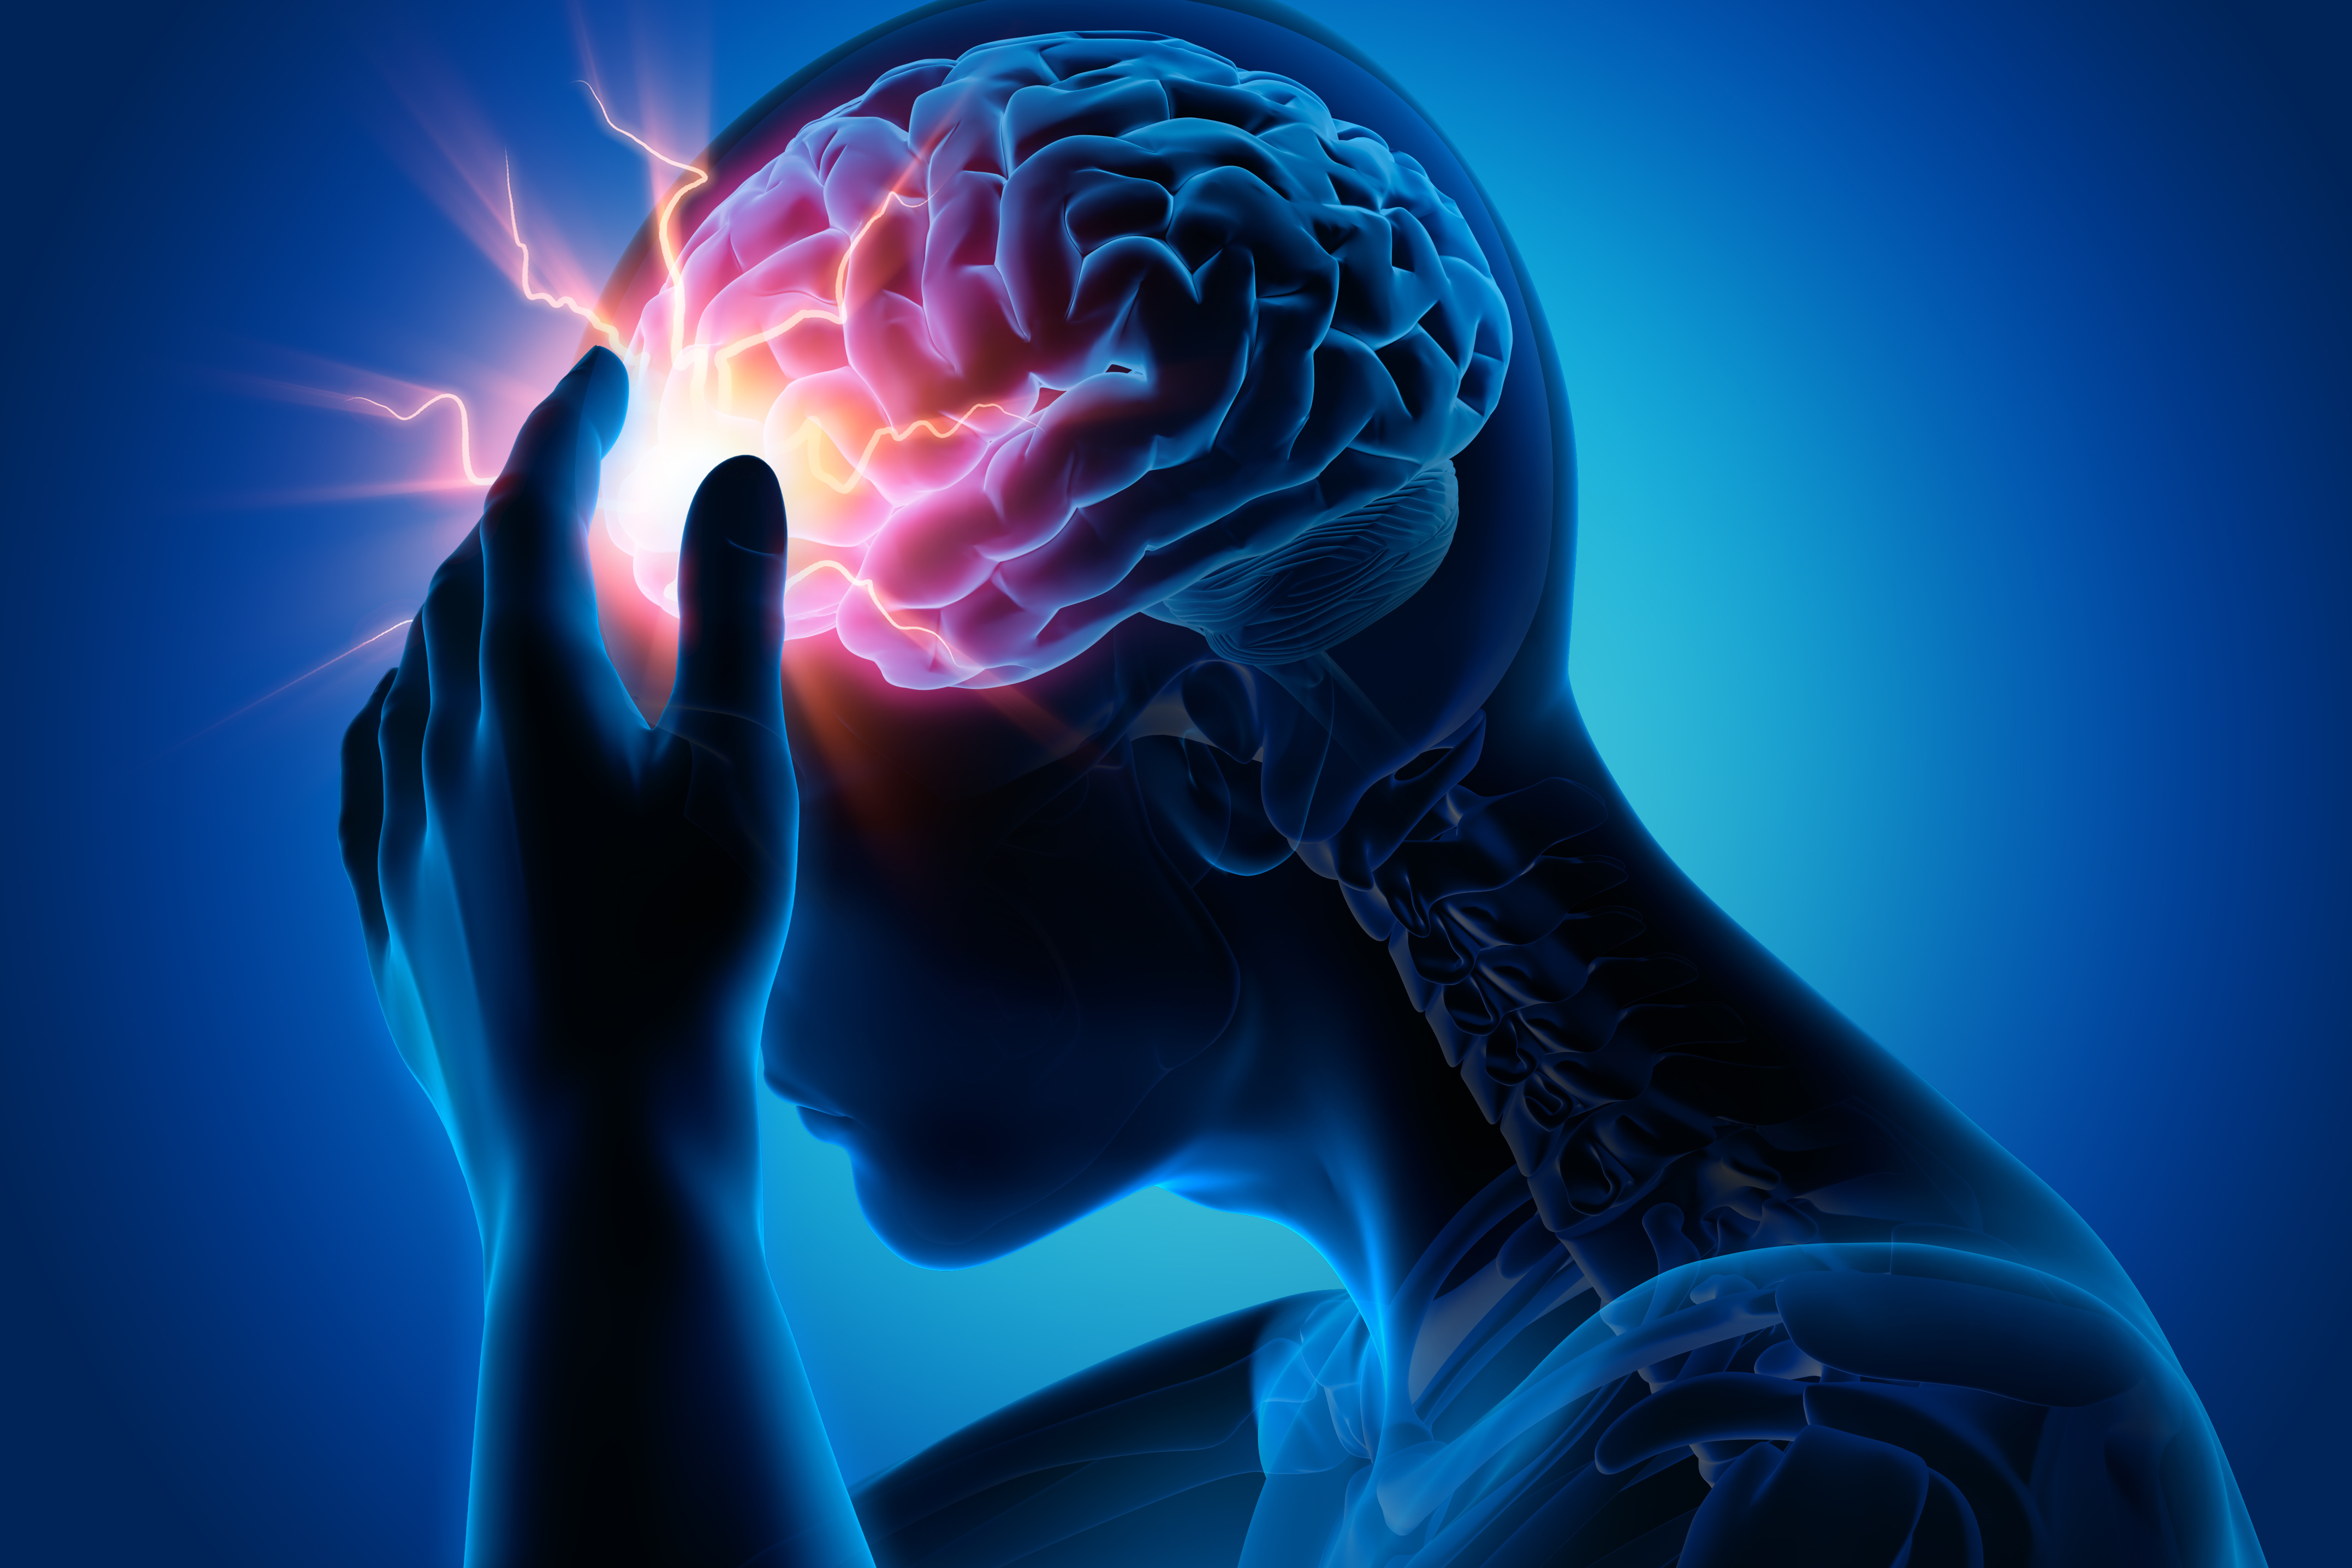 Πειραματική θεραπεία αναστρέφει τις βλάβες του εγκεφαλικού επεισοδίου